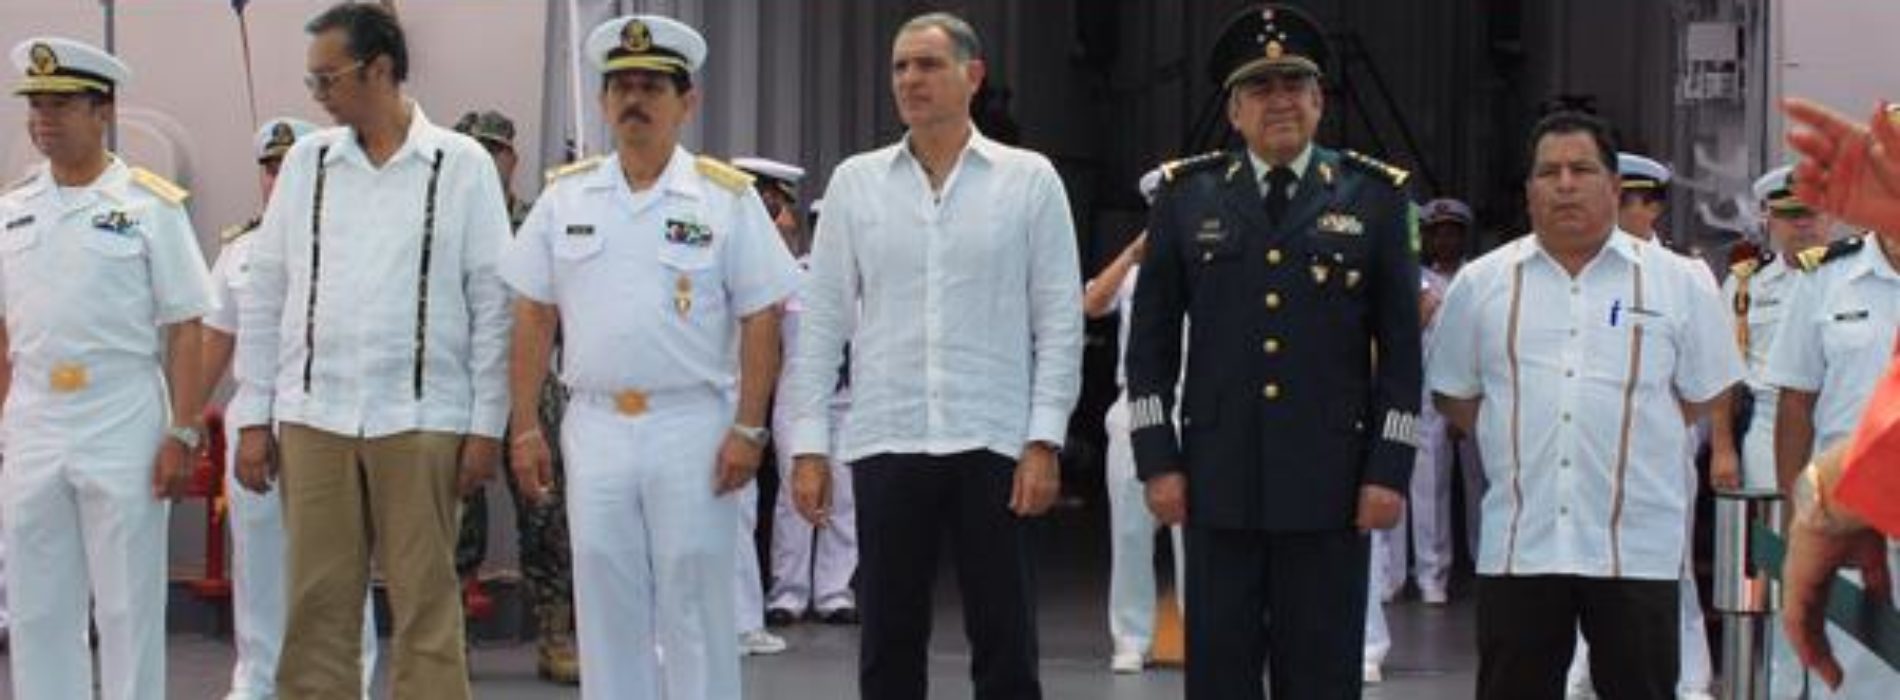 #Oaxaca  @alexayuuk @62LegisOficial Asiste diputado Alejandro Martínez Ramírez a ceremonia por el Día de la Marina